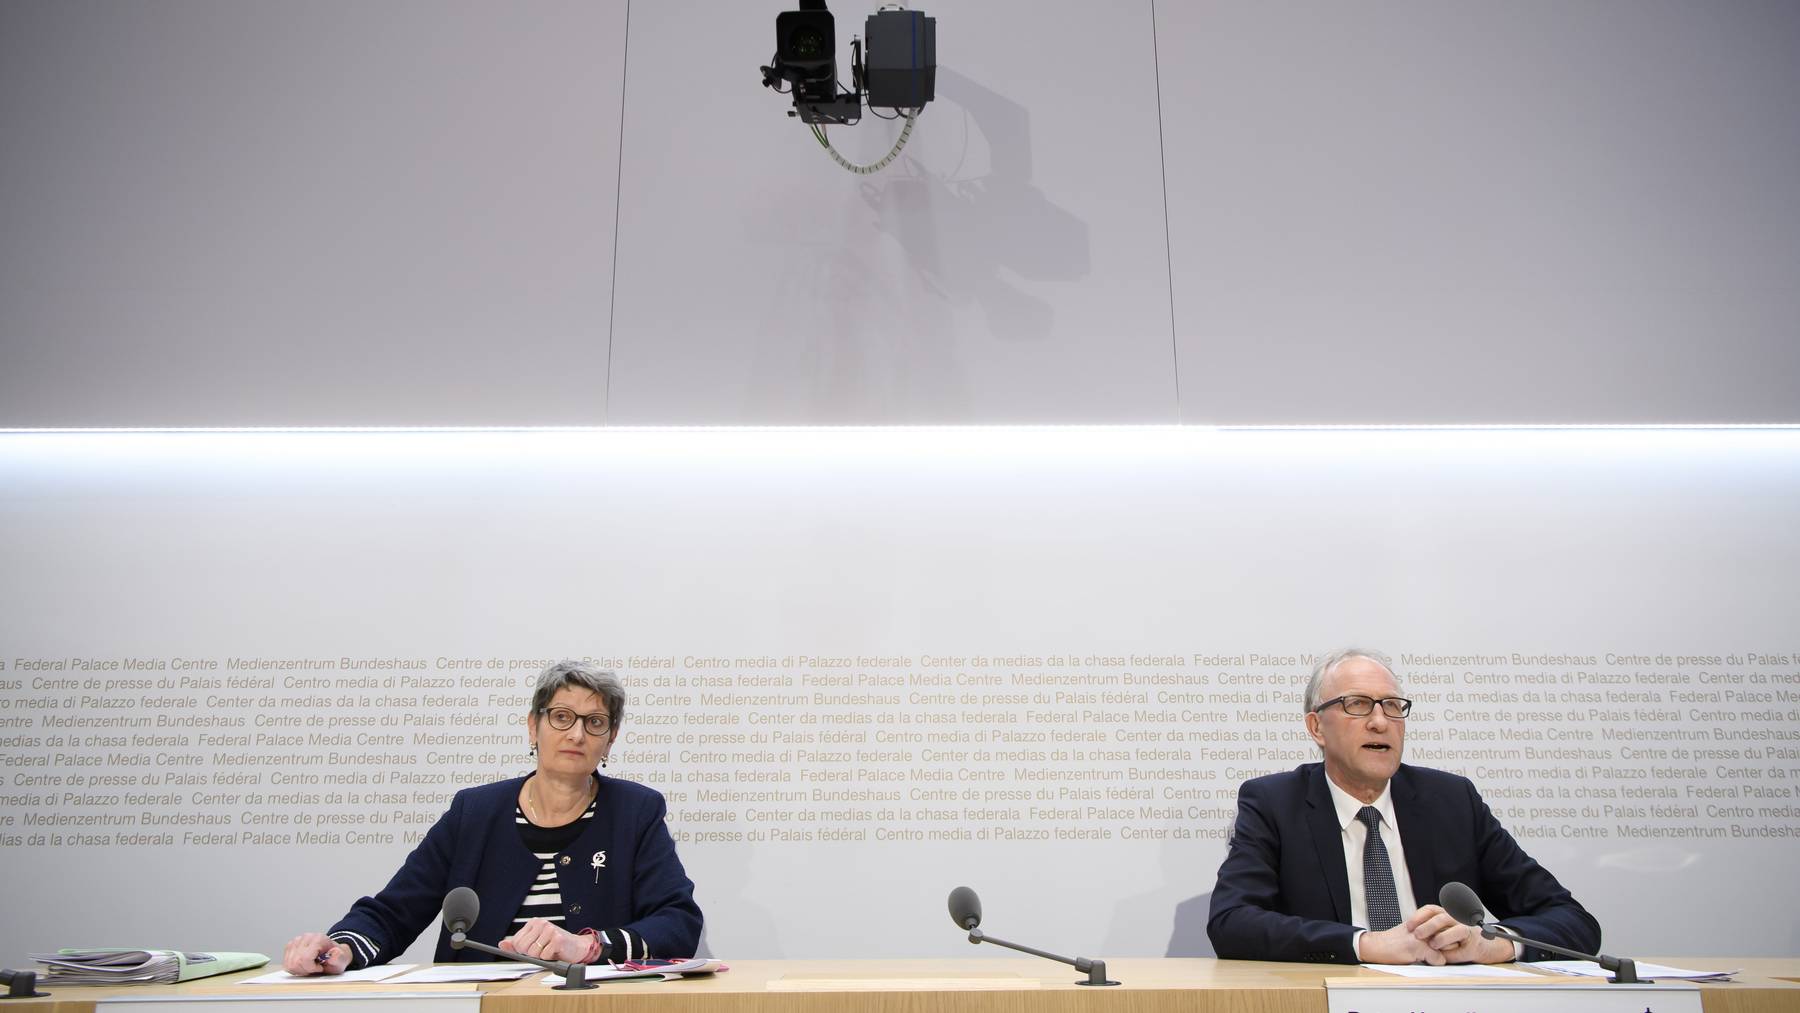 Peter Hegglin, (CVP/ZG) und Ursula Schneider Schüttel (SP/FR) informierten die Öffentlichkeit am Montag über den Entscheid der Finanzdelegation.